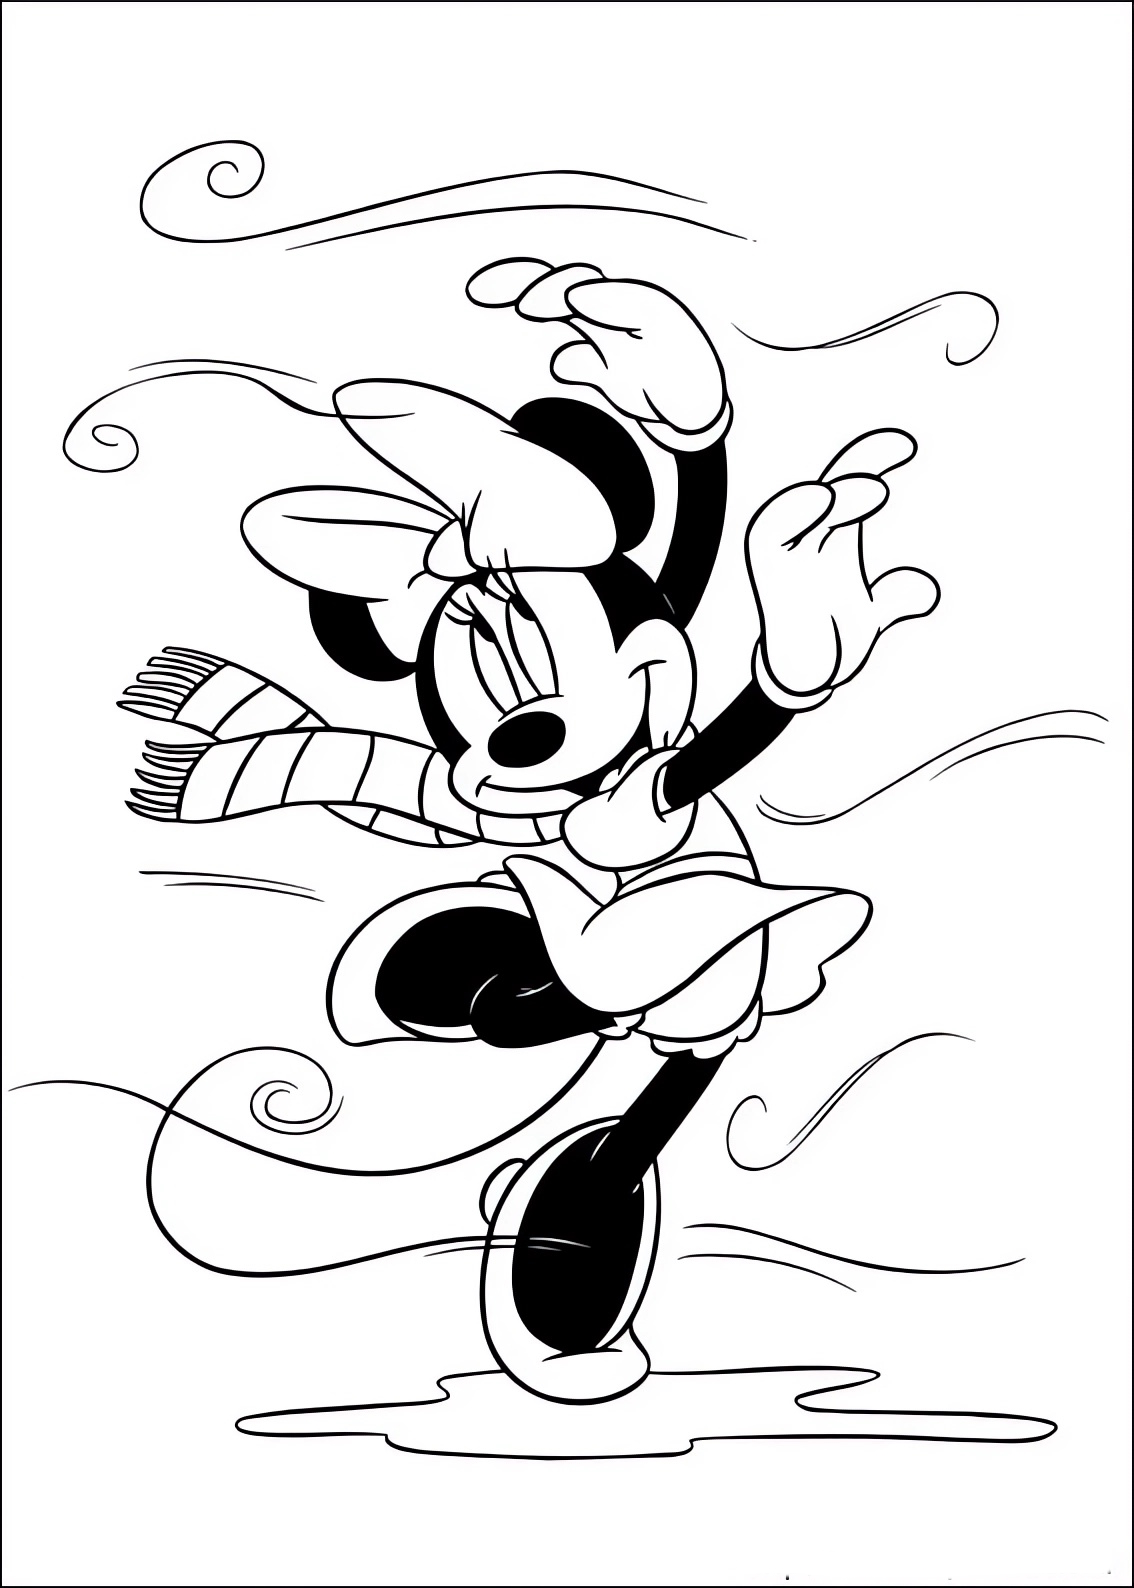 Disegno da colorare di Minnie balla nel vento dell'autunno con la sciarpa al collo